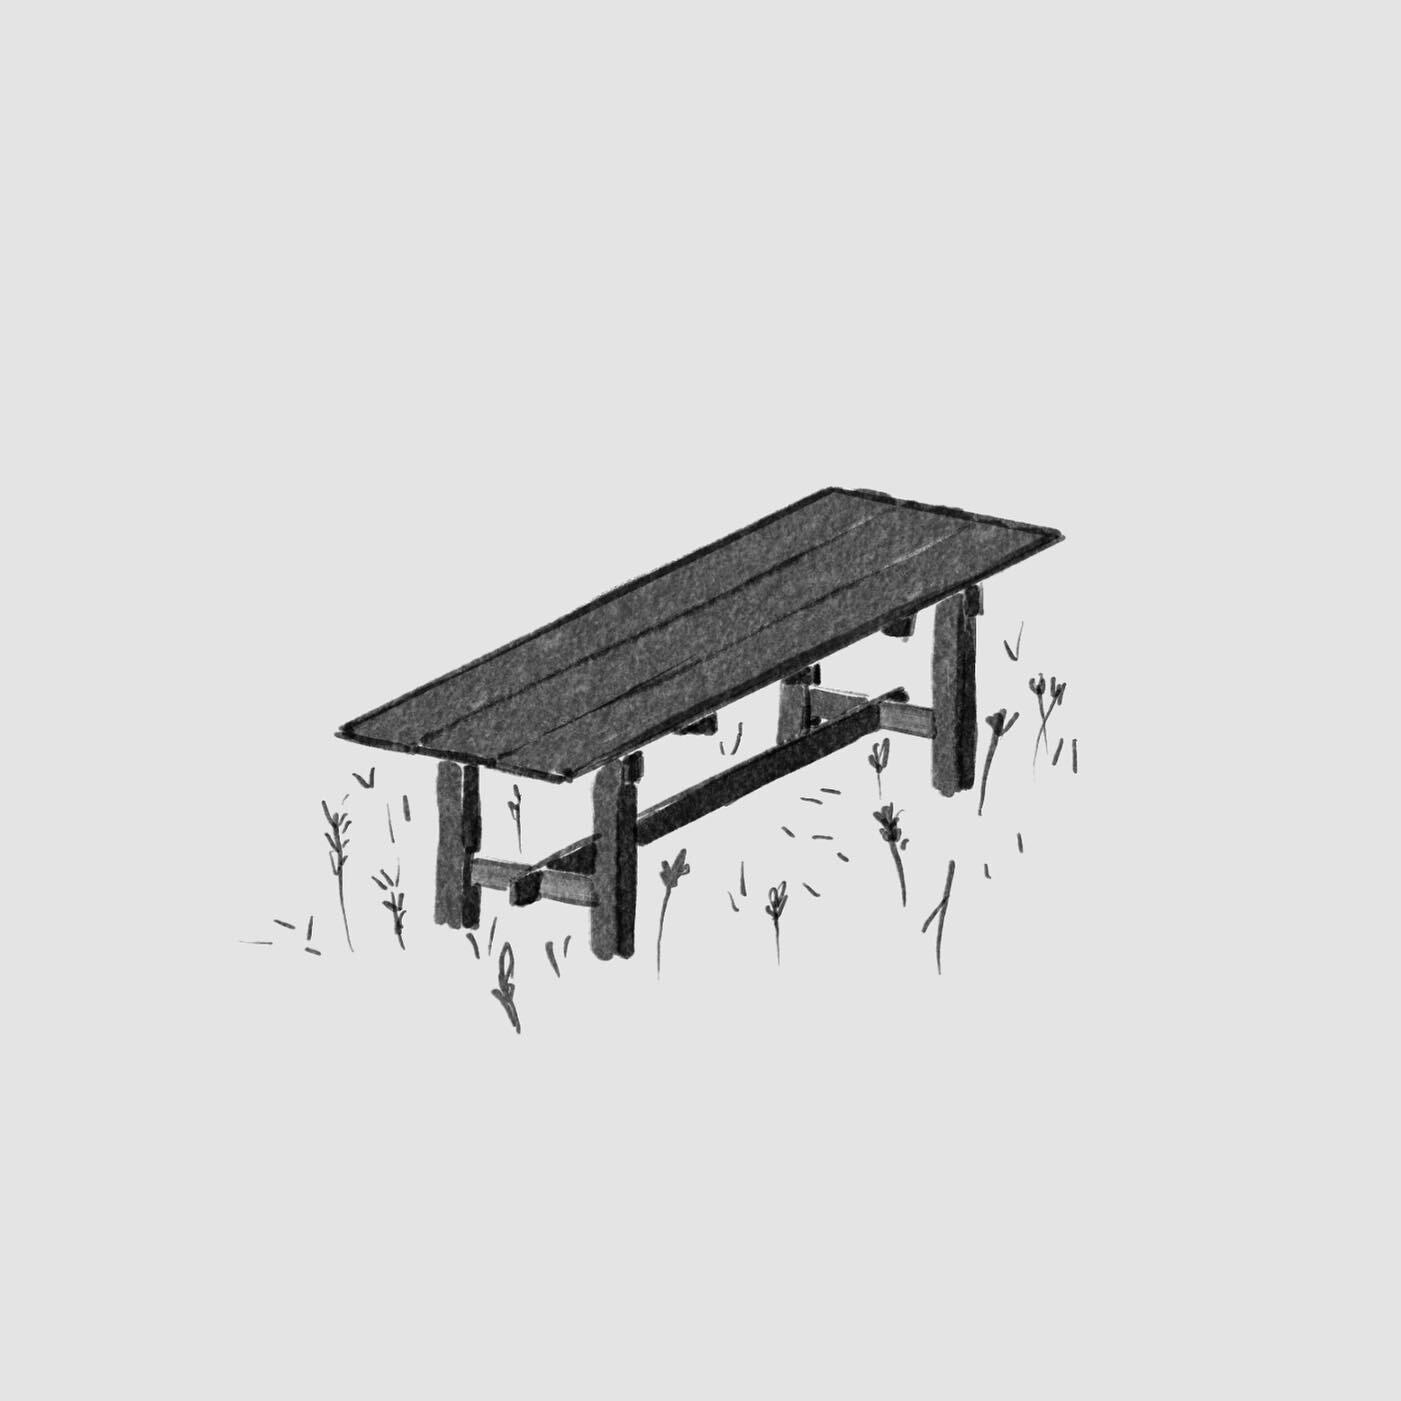 Harvest Table 
.
.
.
.
.
#design #doodle #table #furniture #furnituredesign #industrialdesign #drawing #sketch